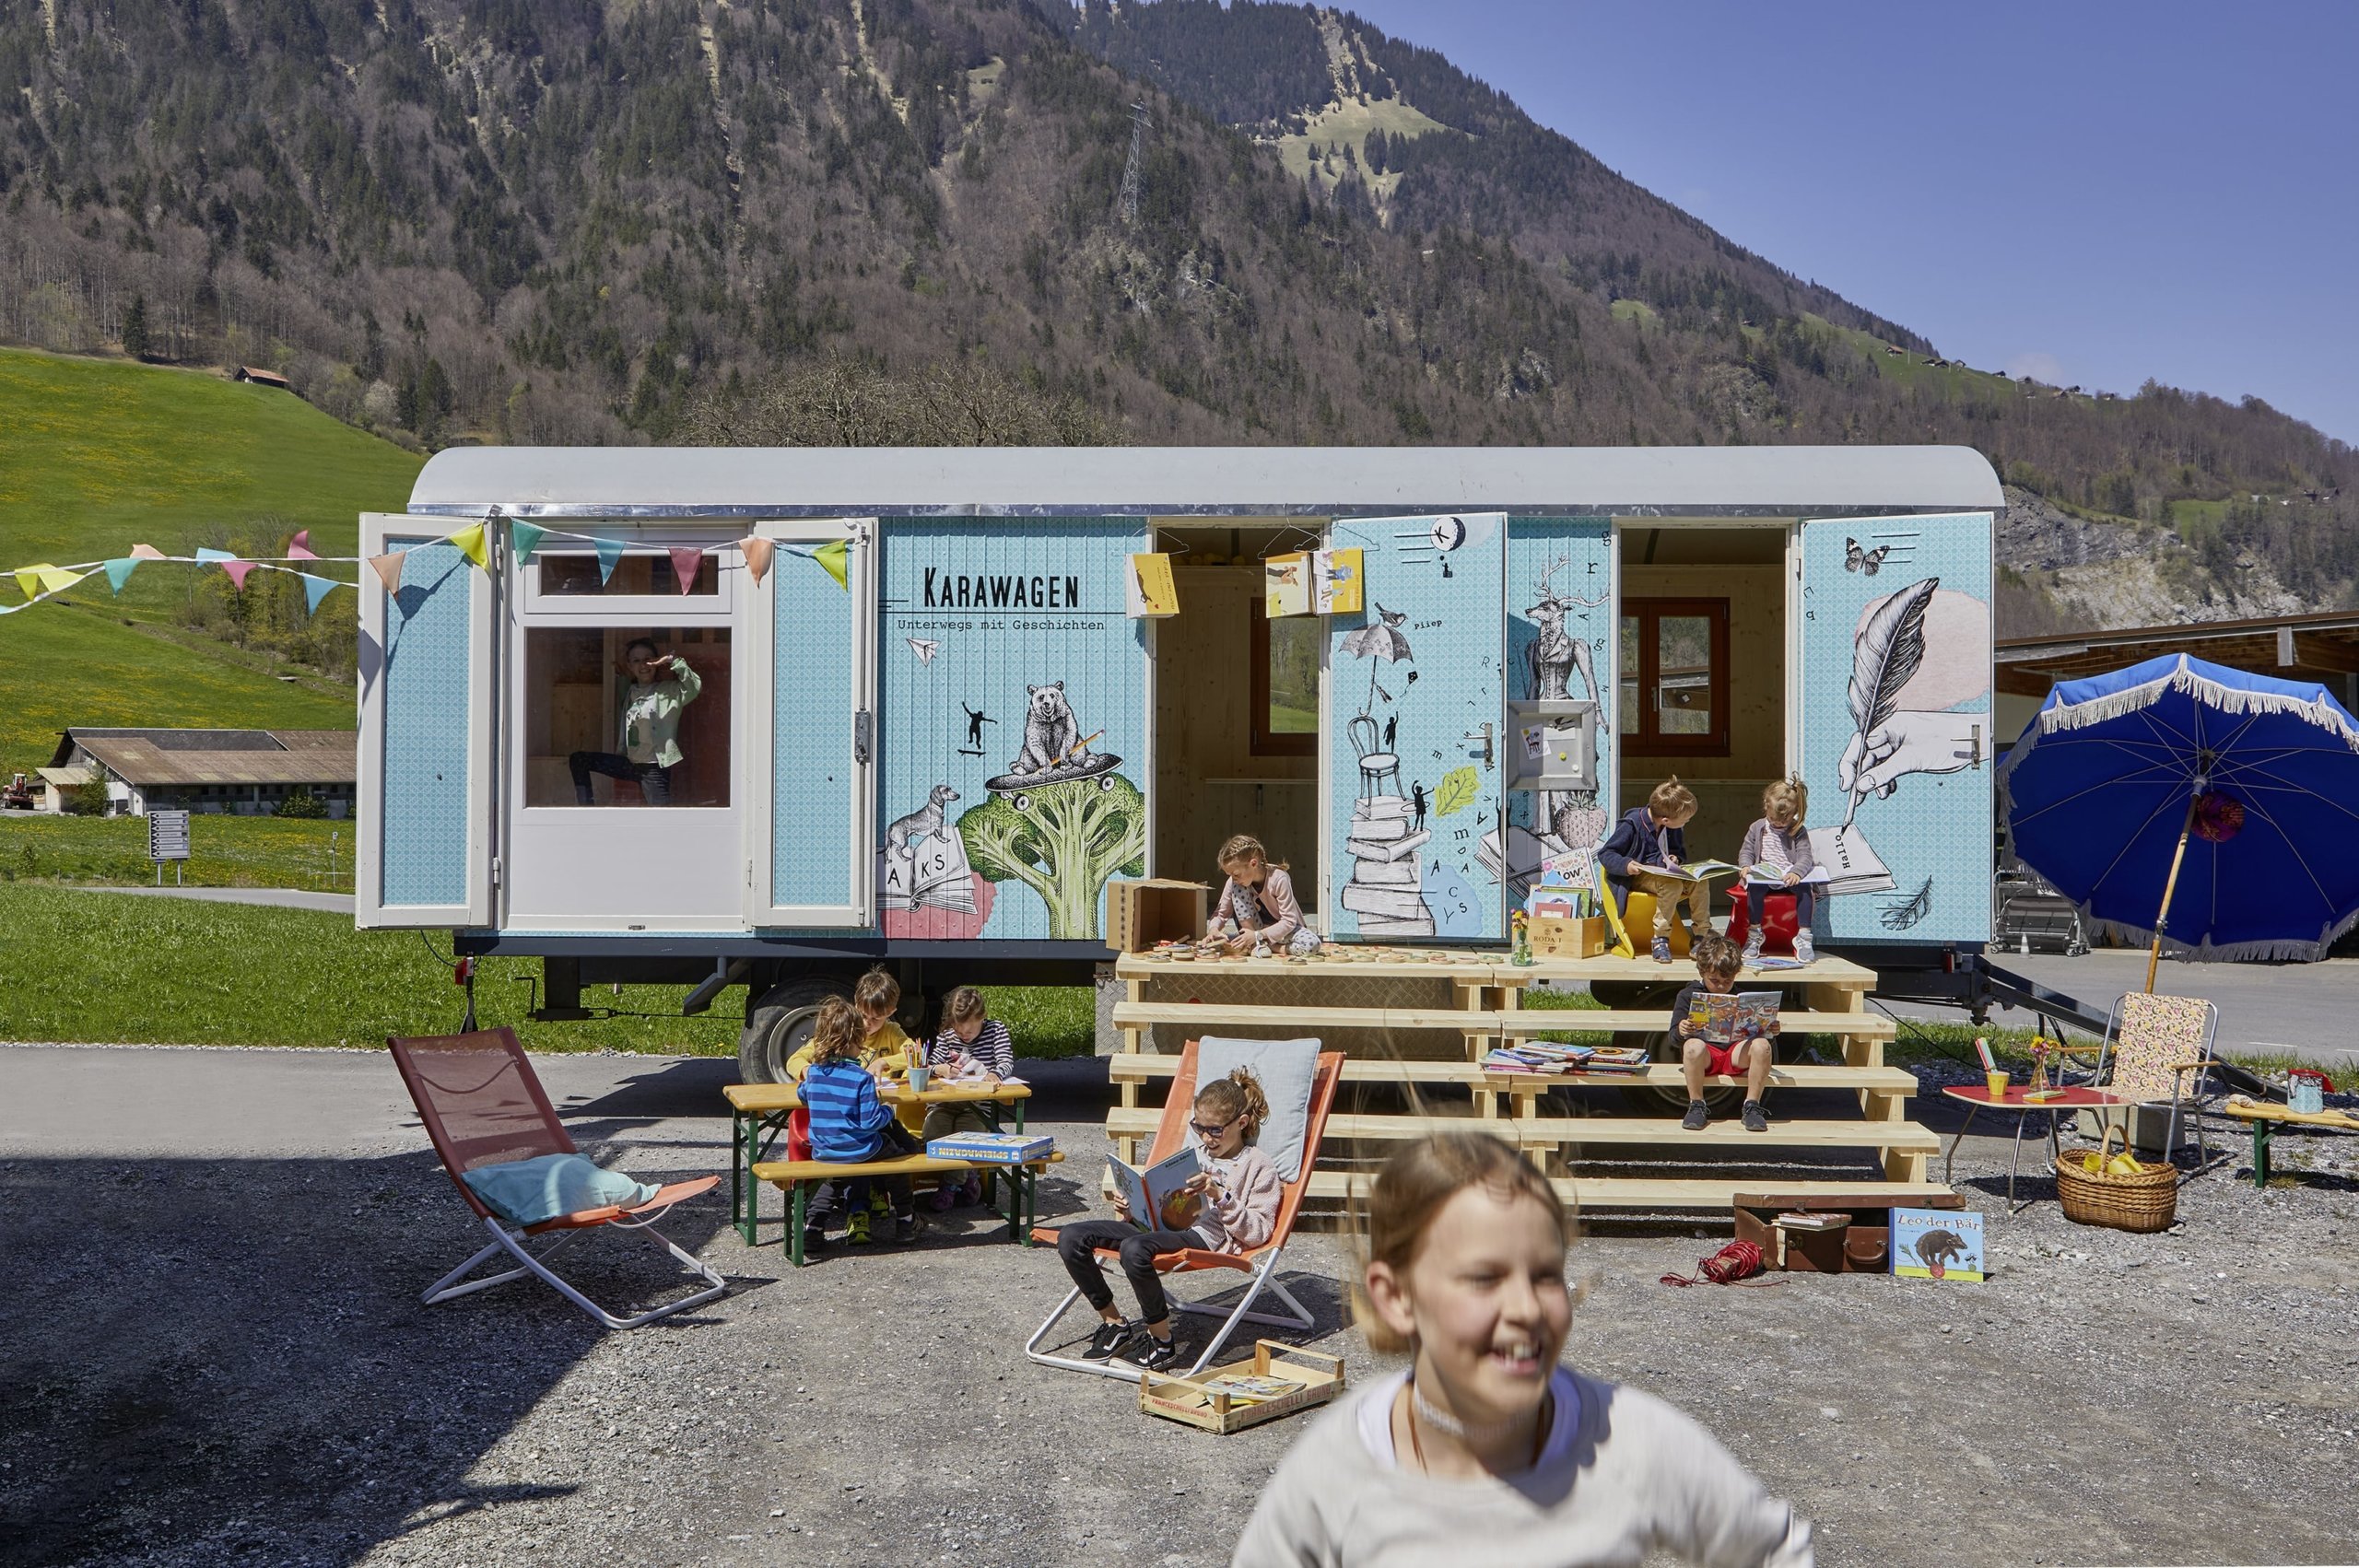 Karawagen - unterwegs mit Geschichten in Luzern